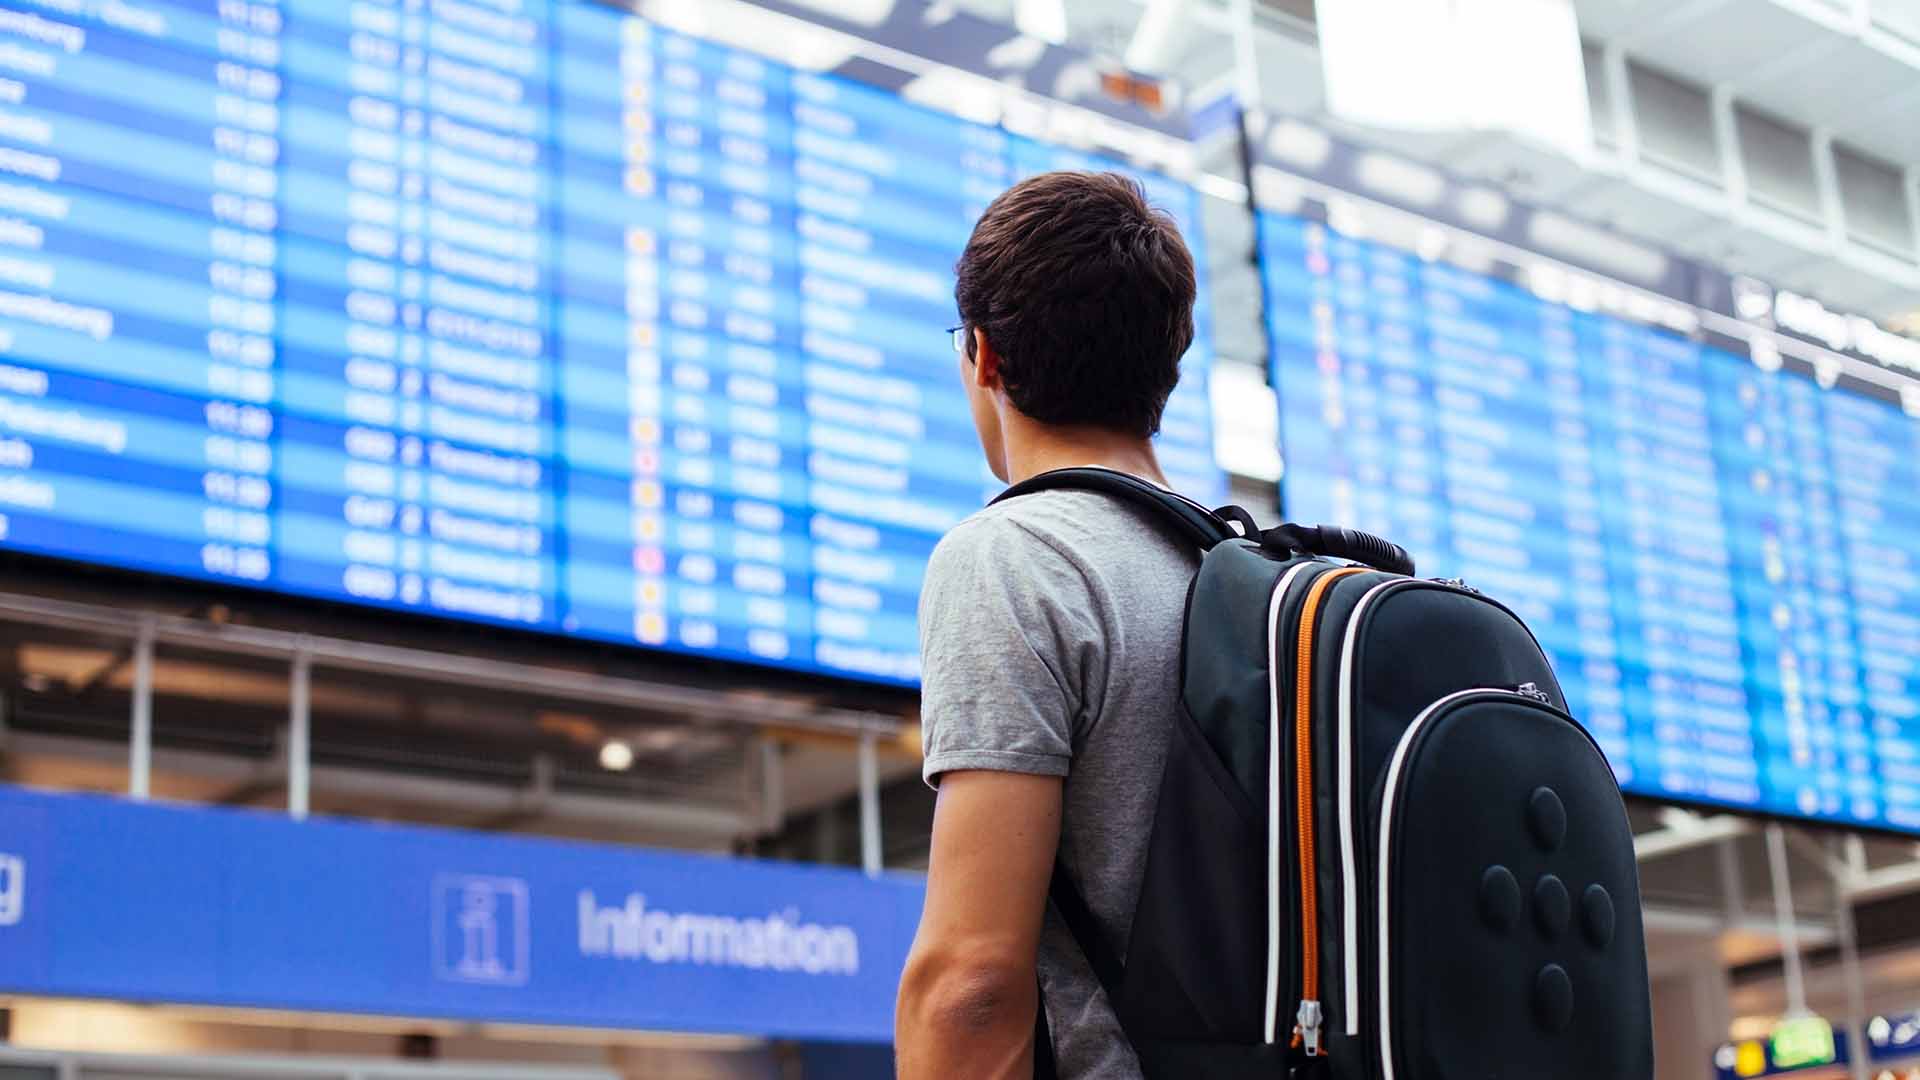 Ein Passagier mit Rucksack schaut auf eine Informationstafel im Flughafengebäude.